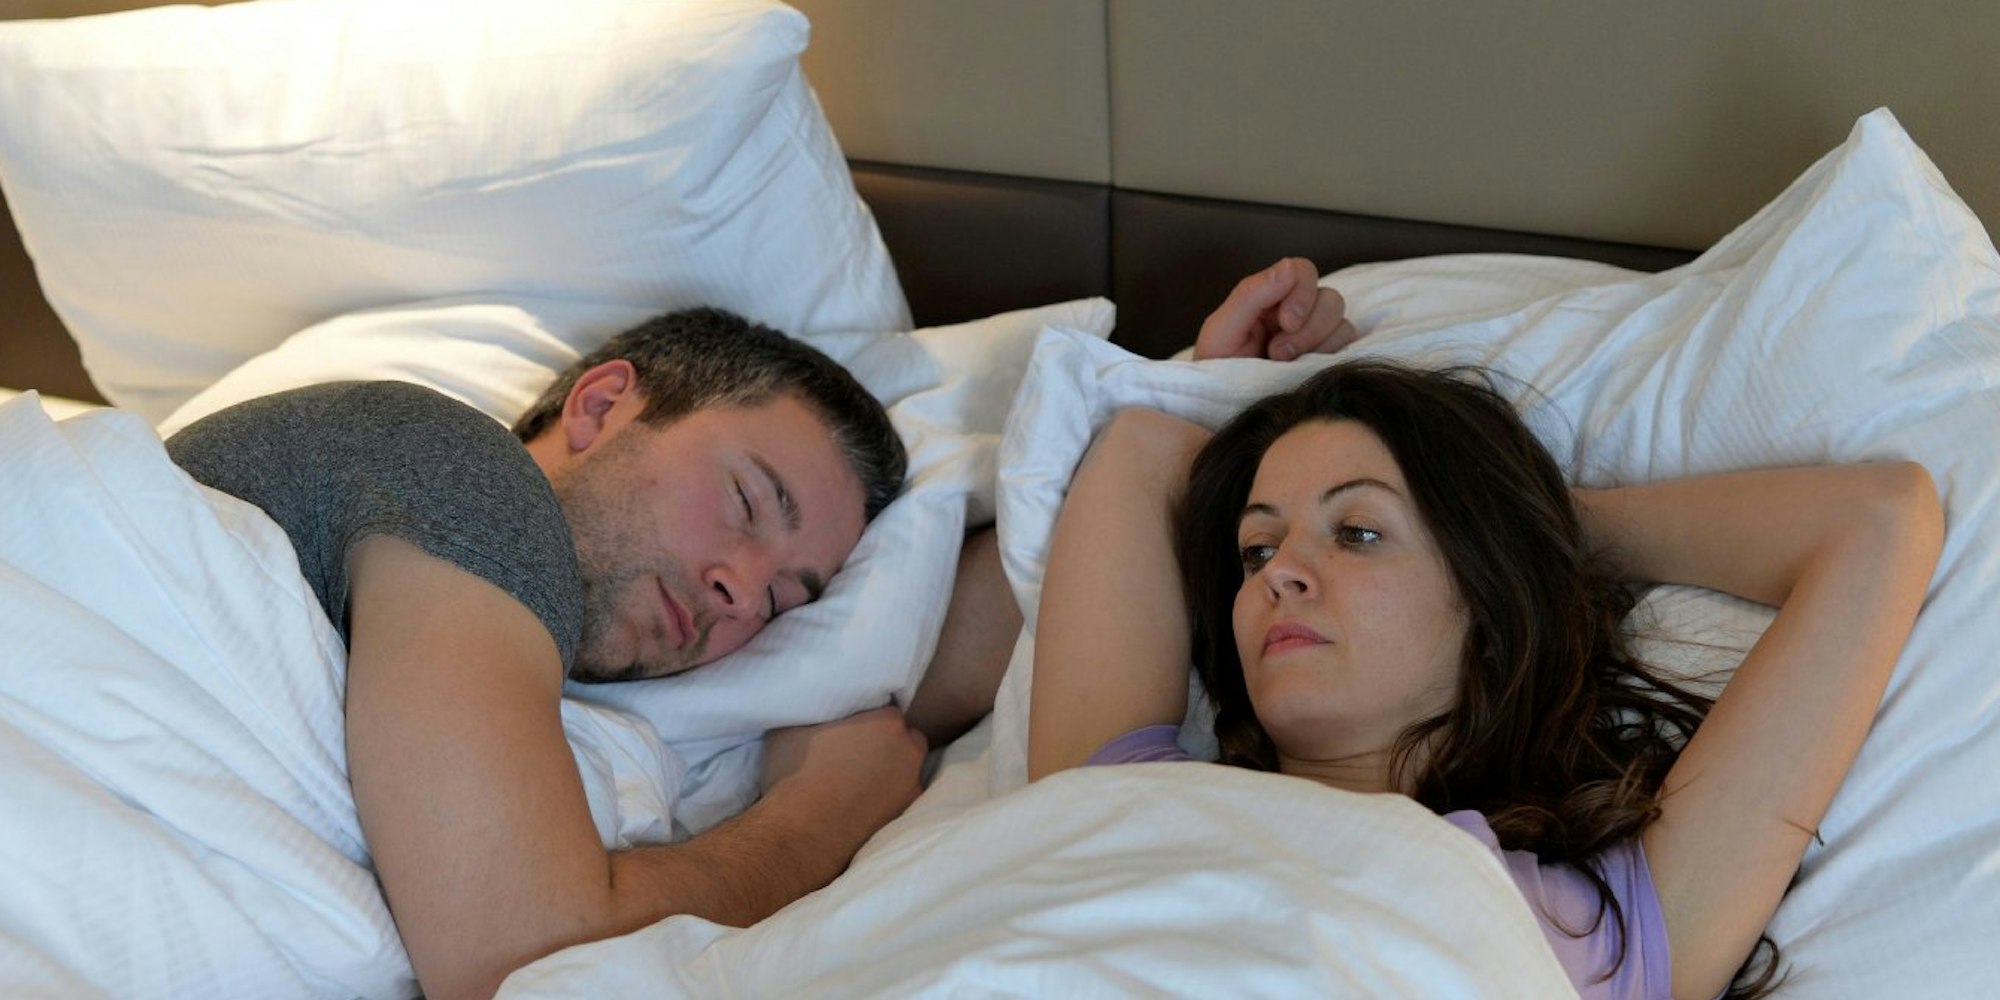 Im Bett springt oft das Gedankenkarussell an. Das Einschlafen gelingt besser, wenn man sich nach der Arbeit körperlich auspowert.